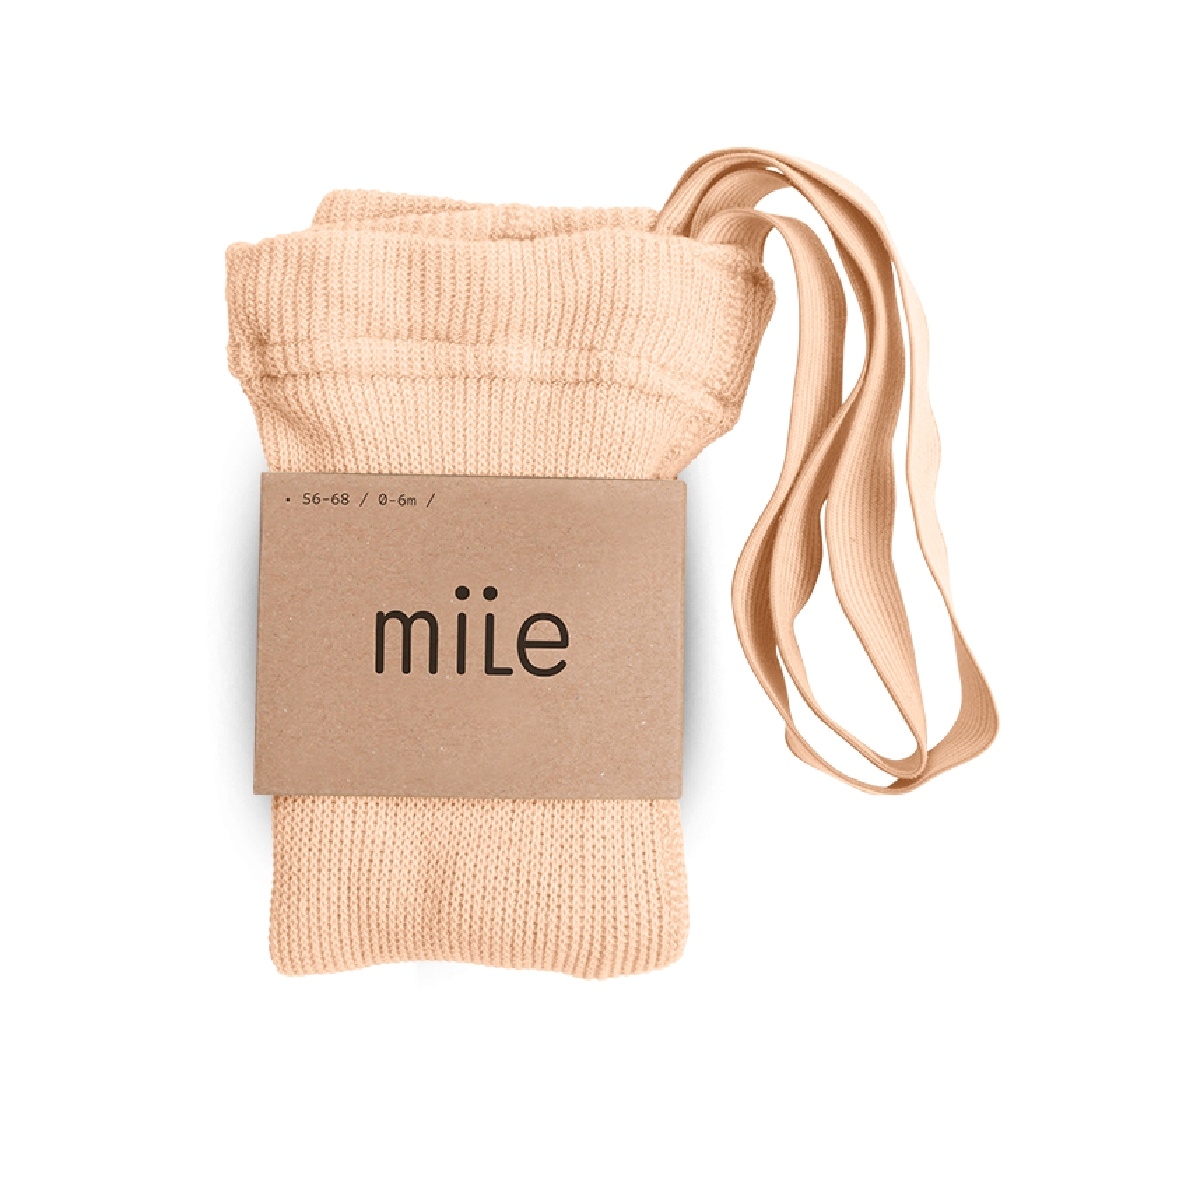 Mile - Cotton tights with braces peach - Strumpfhosen und